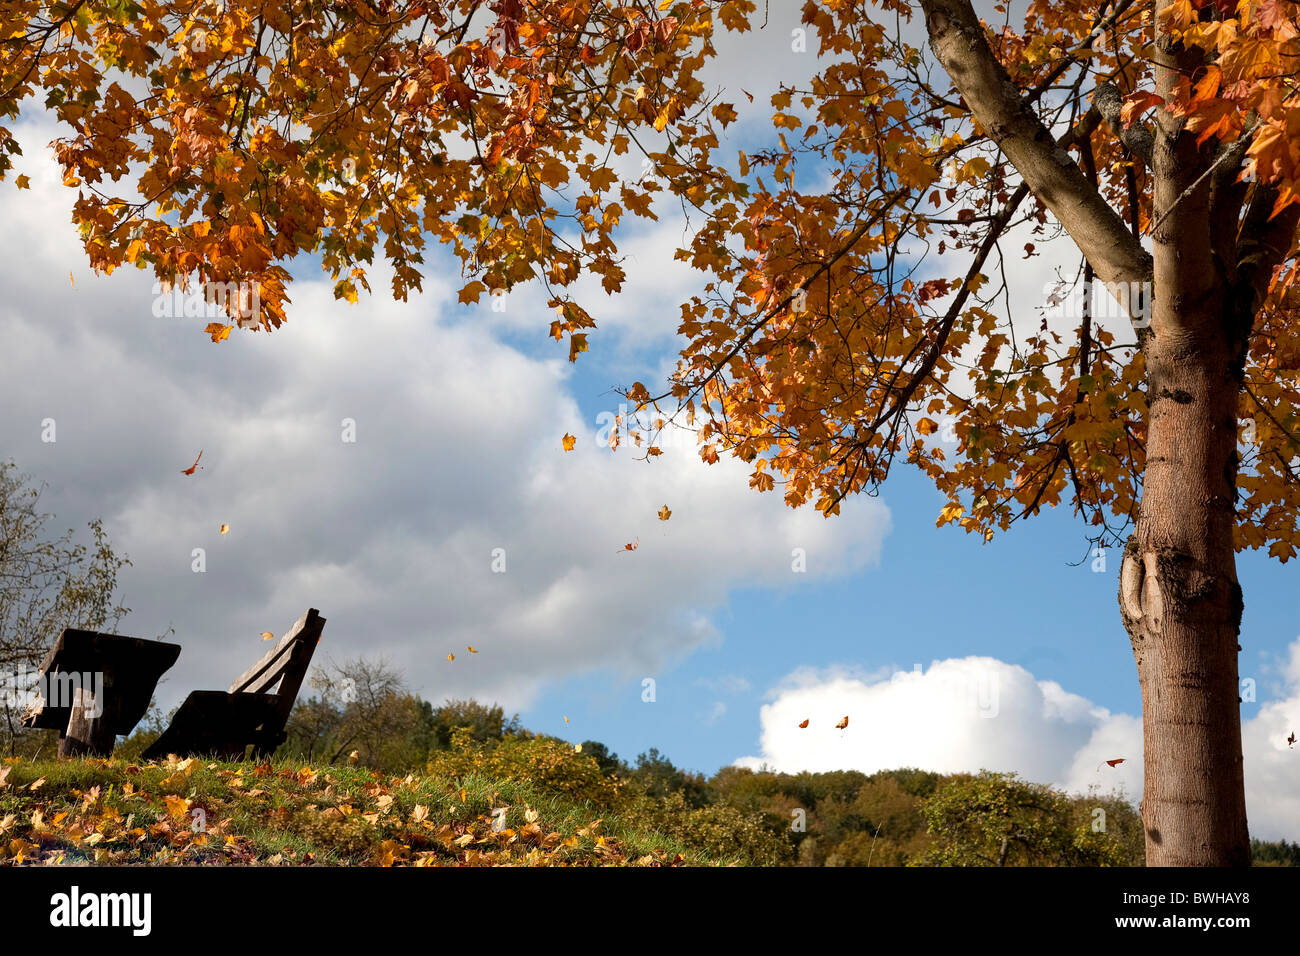 Arbre à feuilles caduques à la chute des feuilles en automne en face d'un ciel nuageux, Rhénanie-Palatinat, Allemagne, Europe Banque D'Images